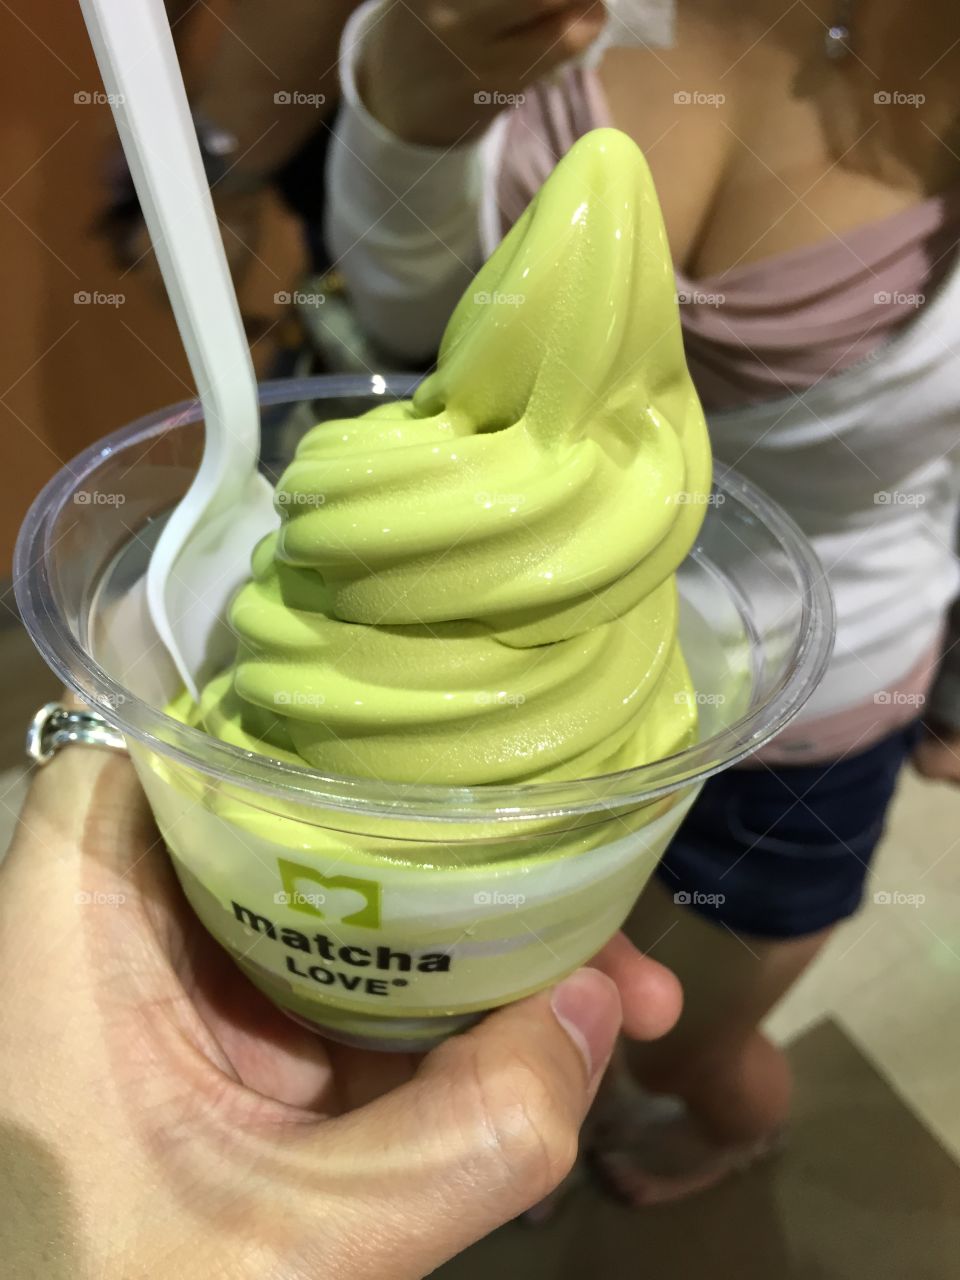 Matcha soft serve ice cream